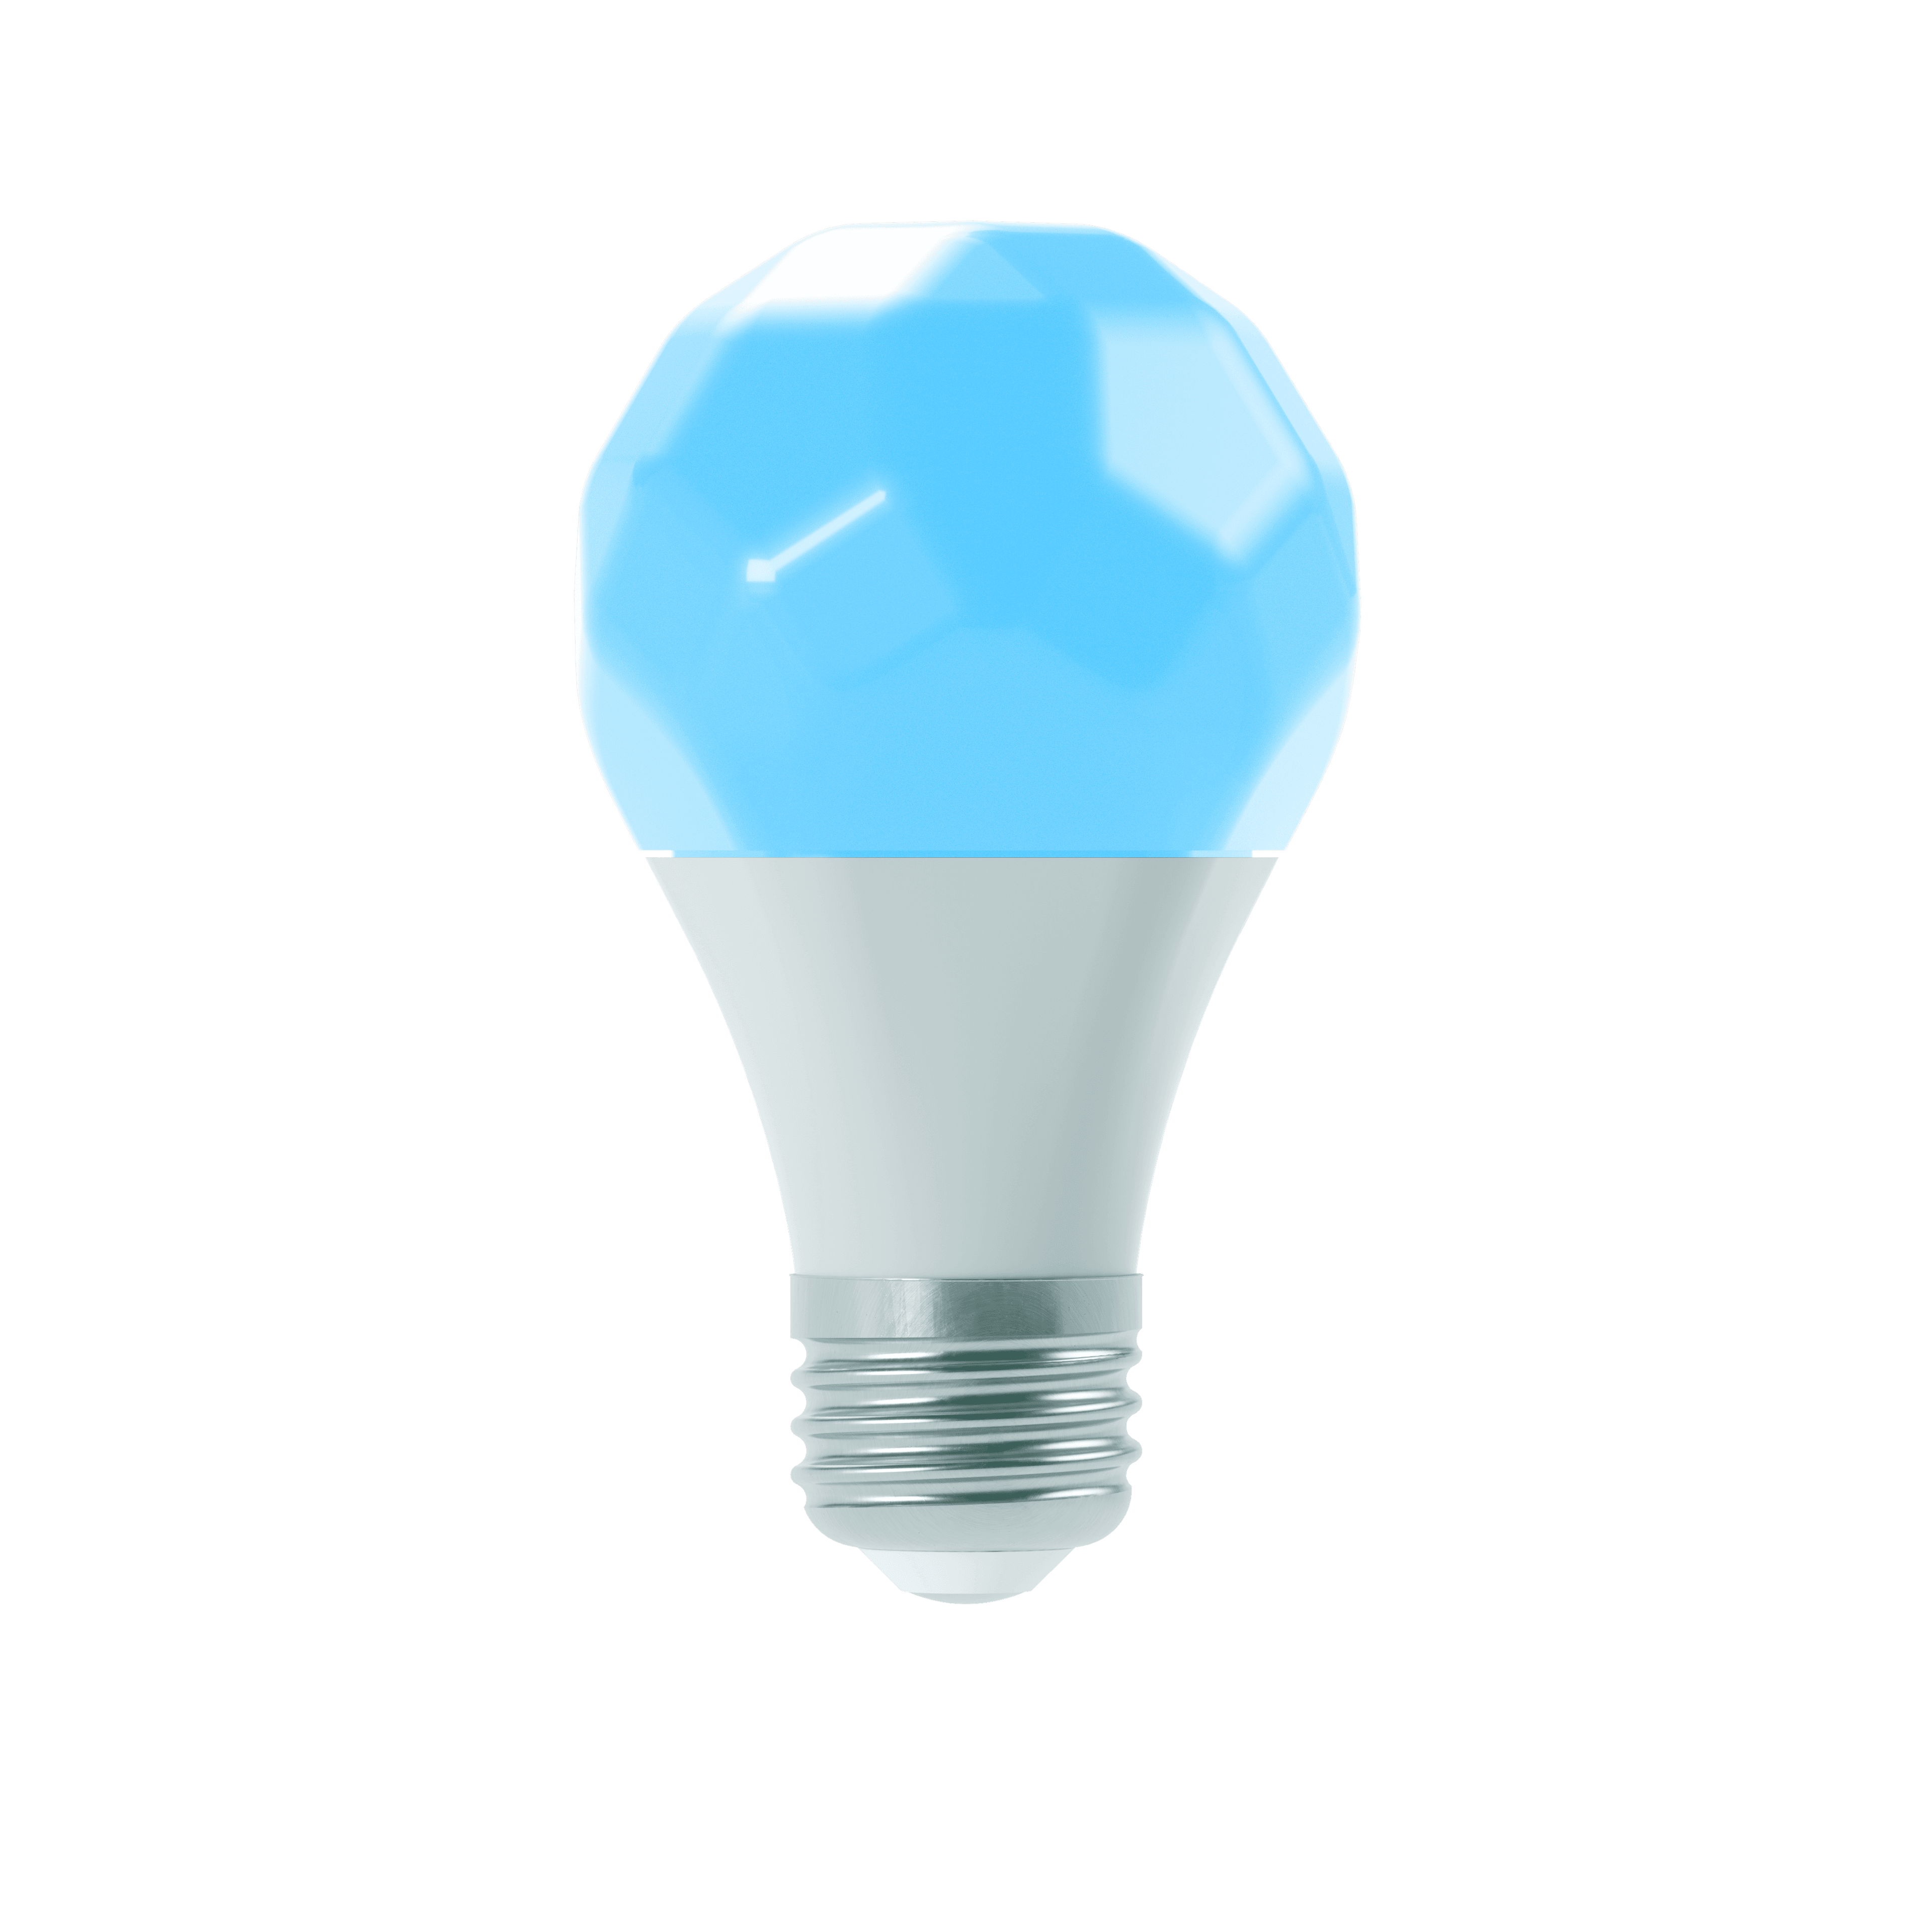 مصباح نانوليف ذكي ESSENTIALS SMART BULB Smart Light Bulb for Home/Office - Nanoleaf